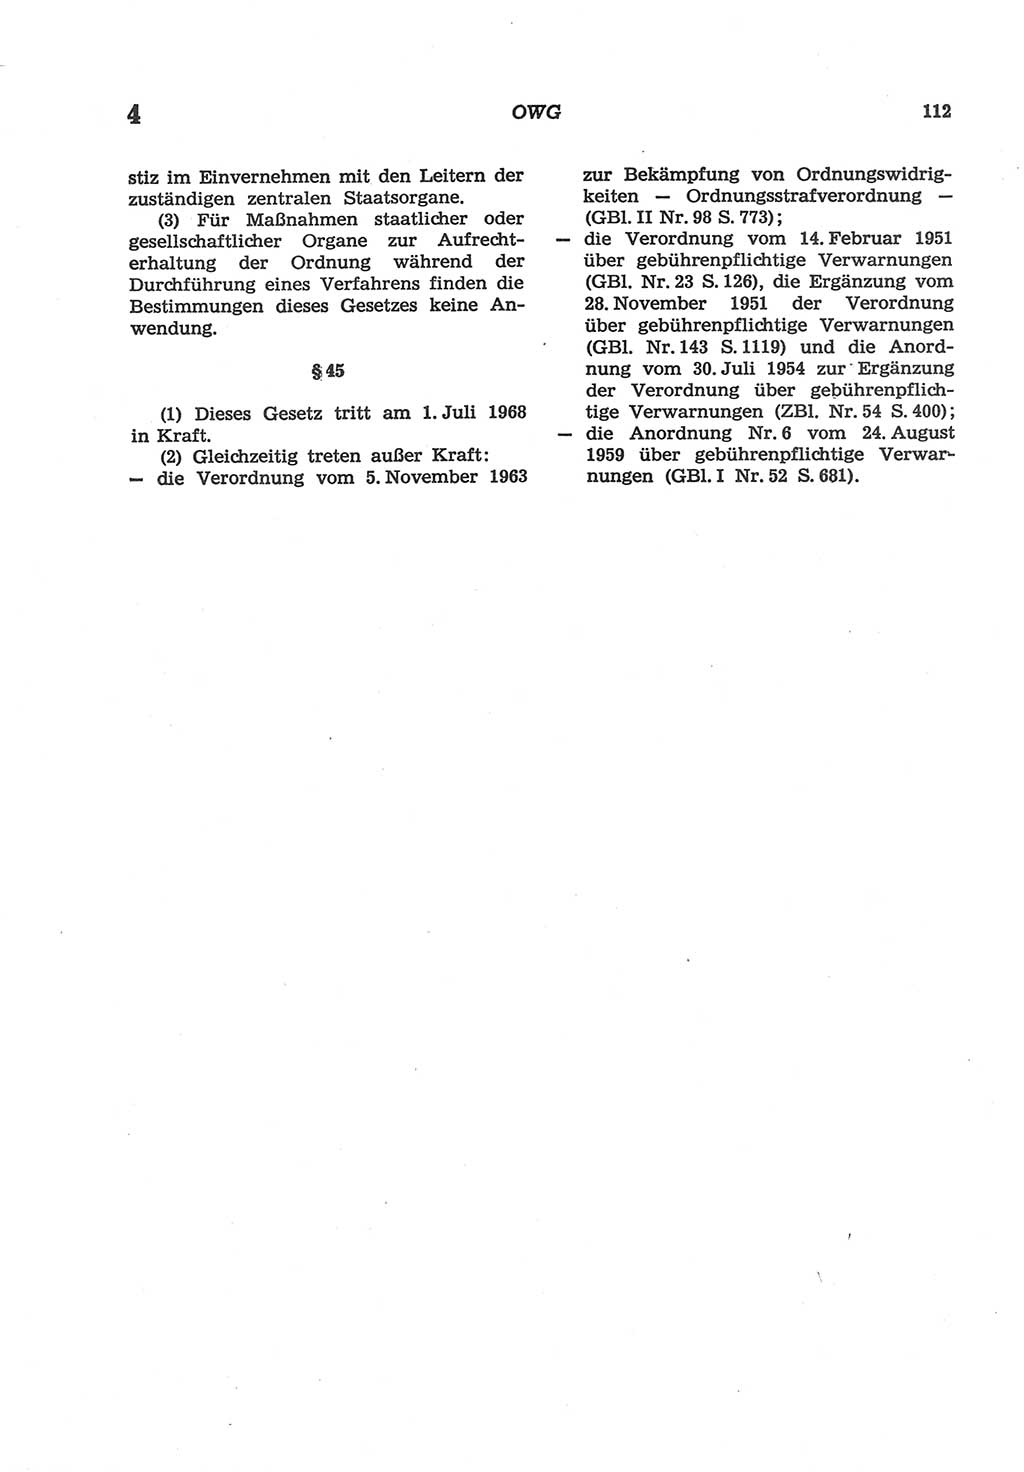 Strafgesetzbuch (StGB) der Deutschen Demokratischen Republik (DDR) und angrenzende Gesetze und Bestimmungen 1977, Seite 112 (StGB DDR Ges. Best. 1977, S. 112)